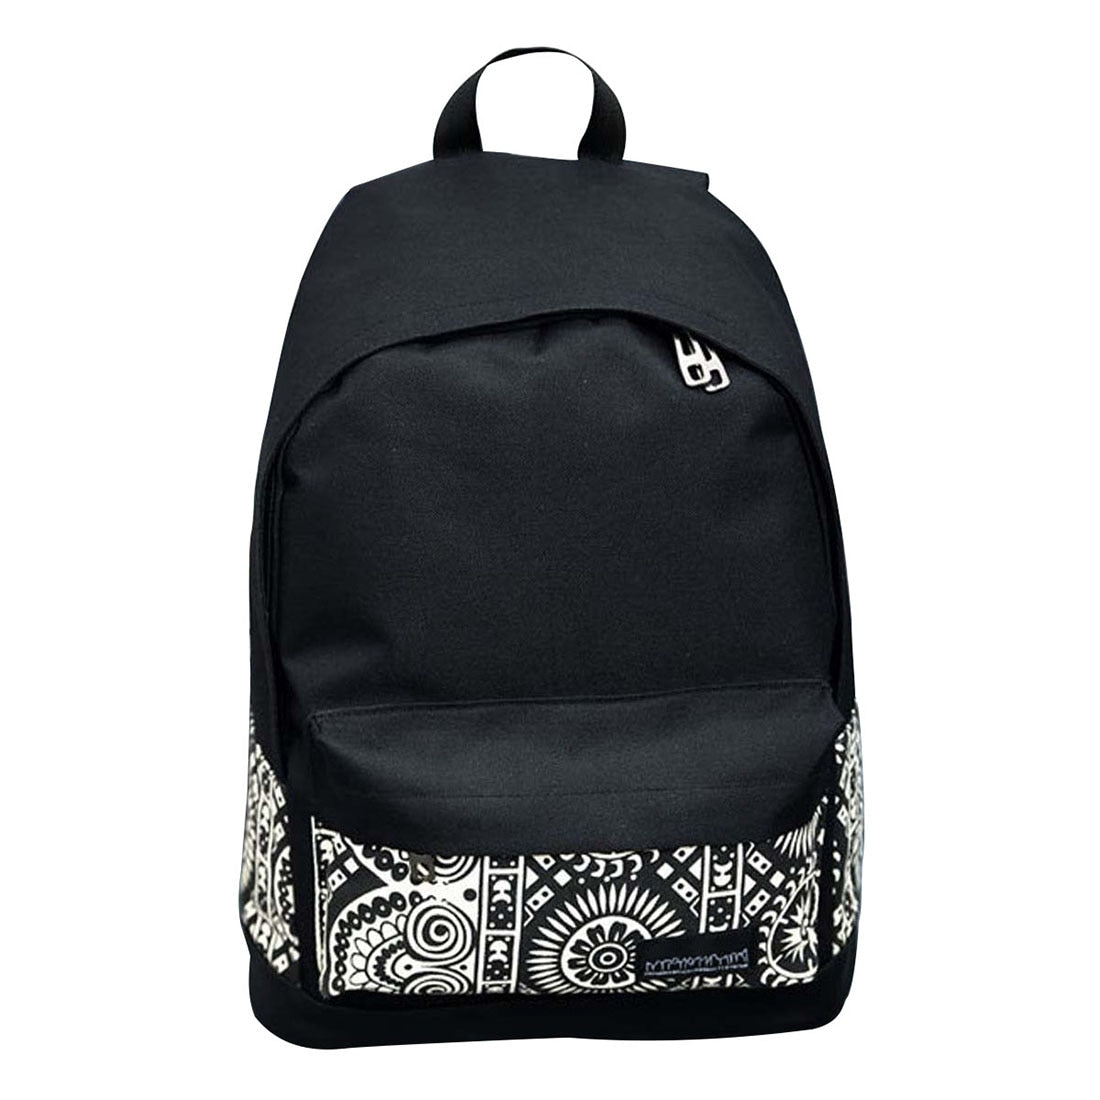 Girls Women Canvas School Bag Travel Backpack Satchel Shoulder Bag Rucksack Black 4 - ebowsos